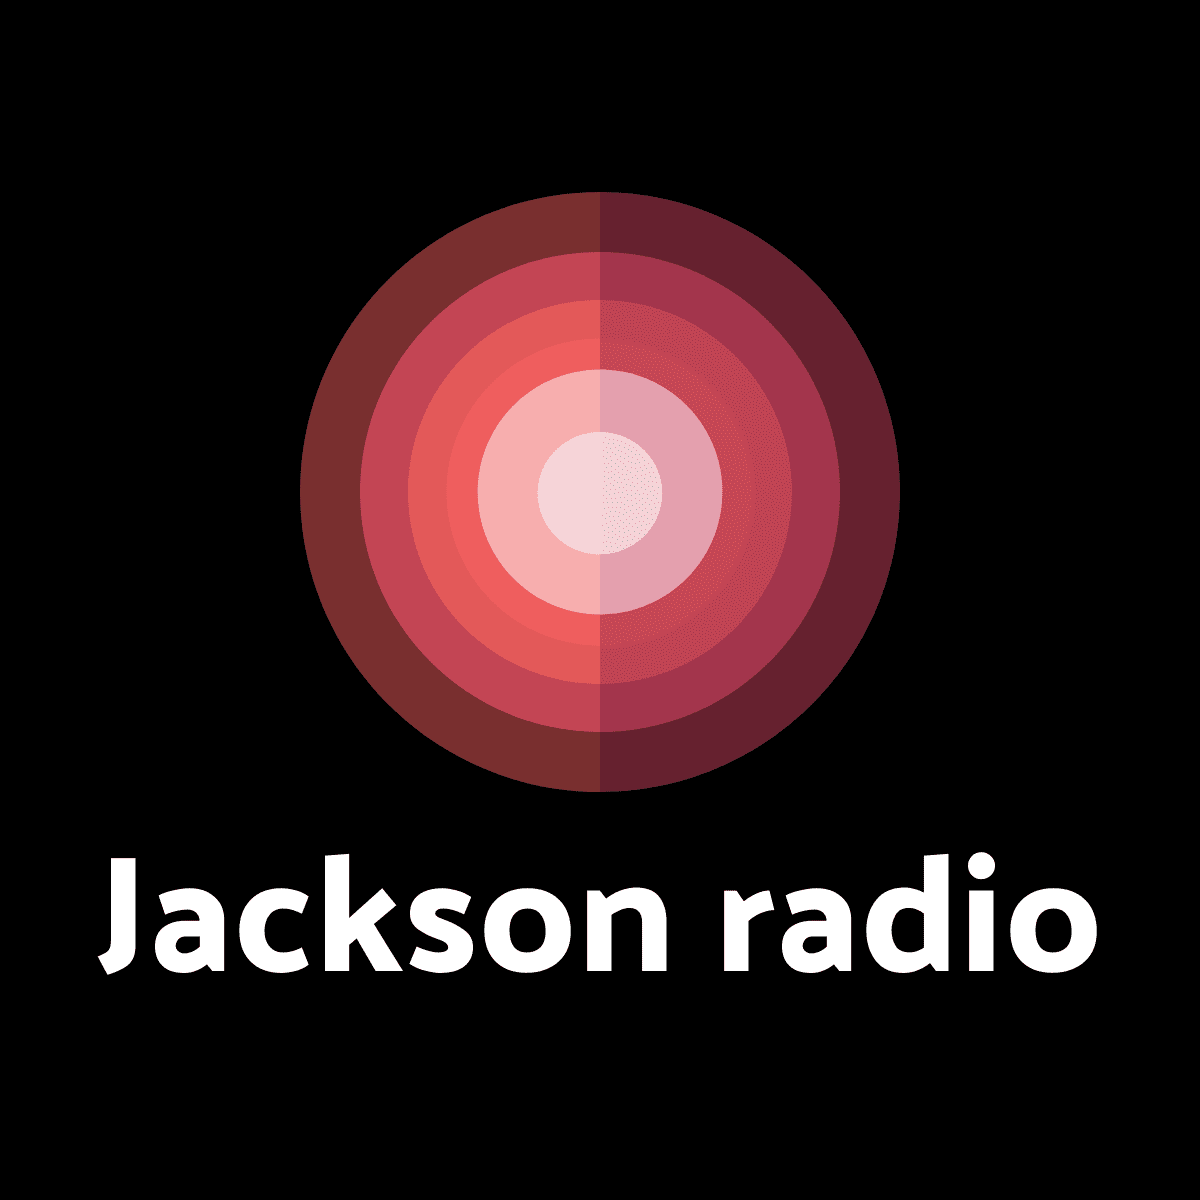 Jackson radio